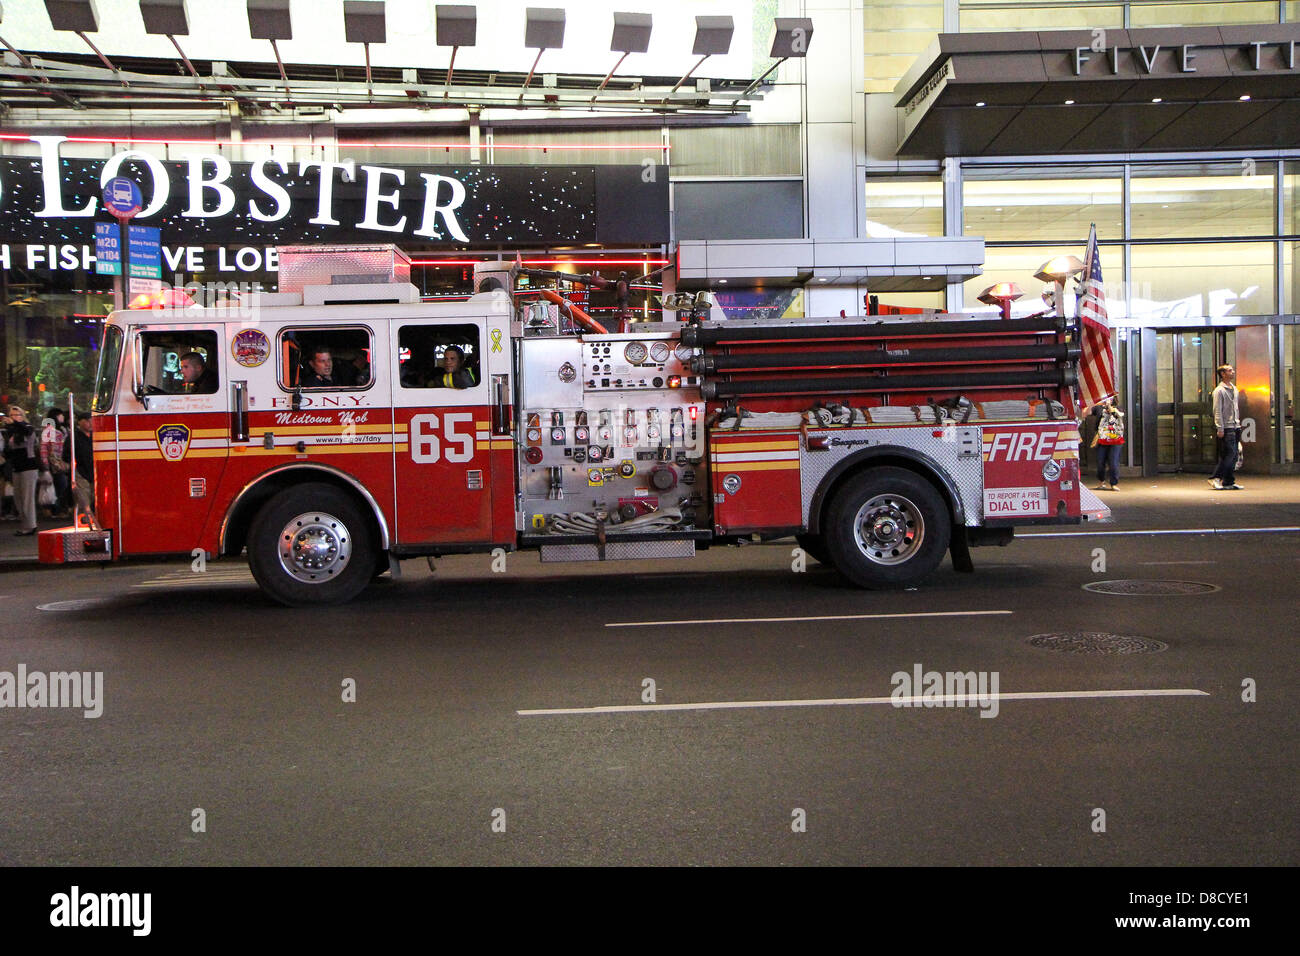 American Fire Station à l'extérieur du moteur Lobster restaurant New York NY USA Banque D'Images